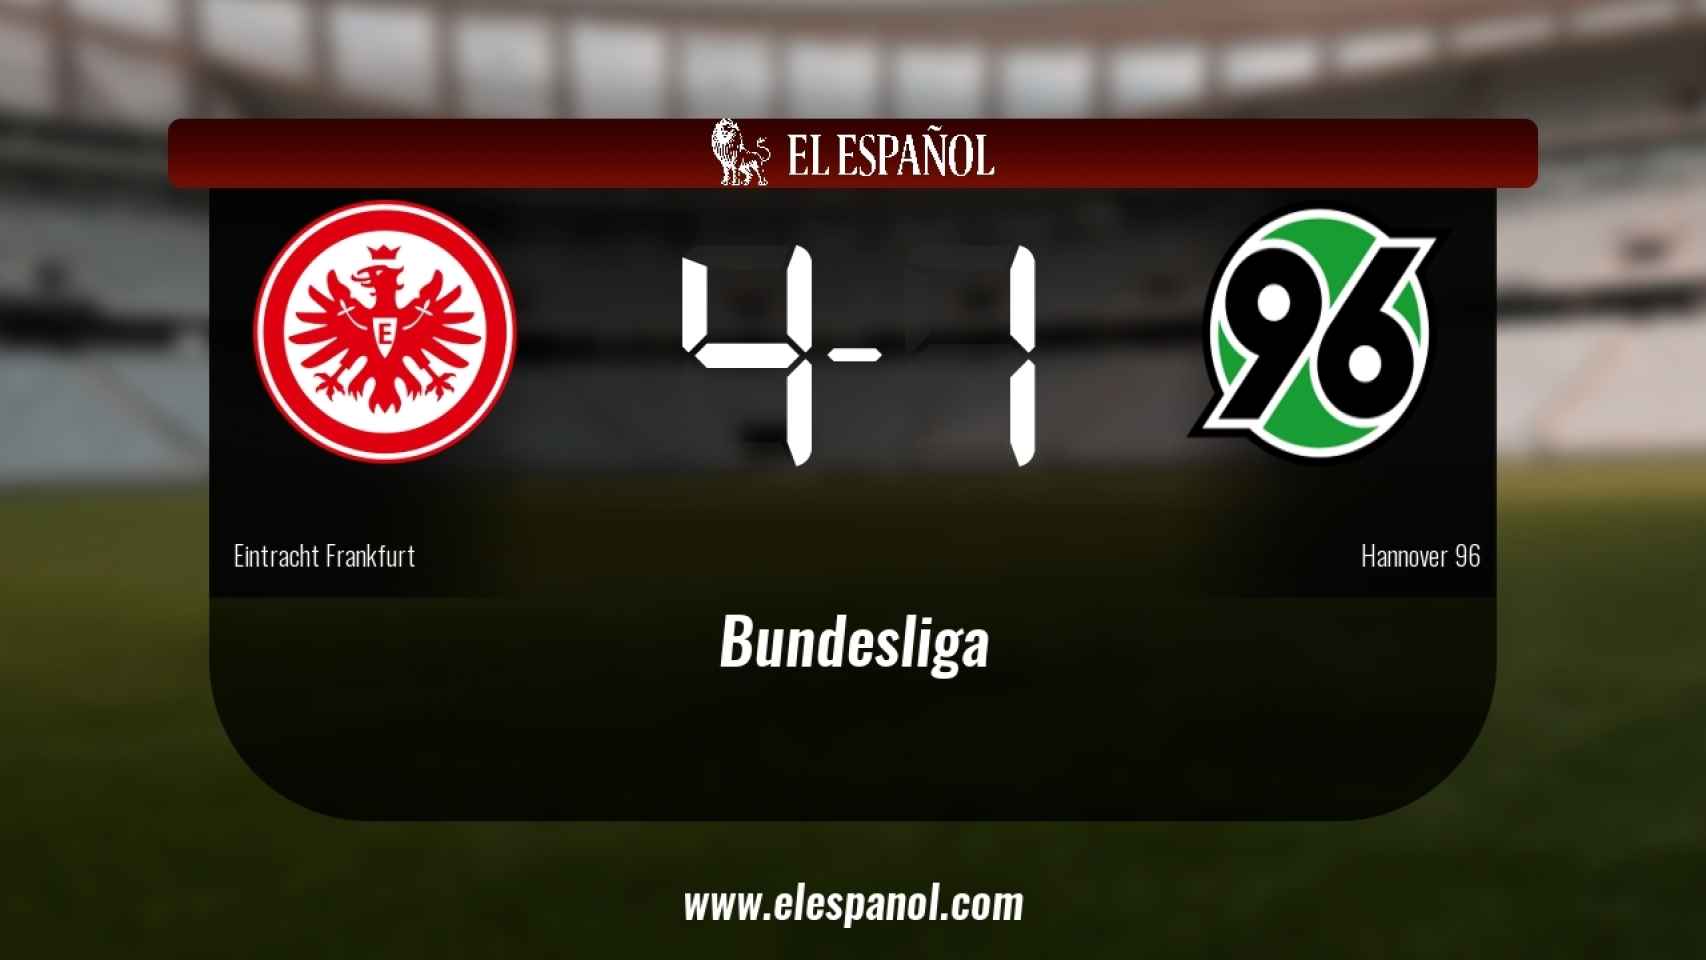 Tres puntos para el equipo local: Eintracht Frankfurt 4-1 Hannover 96